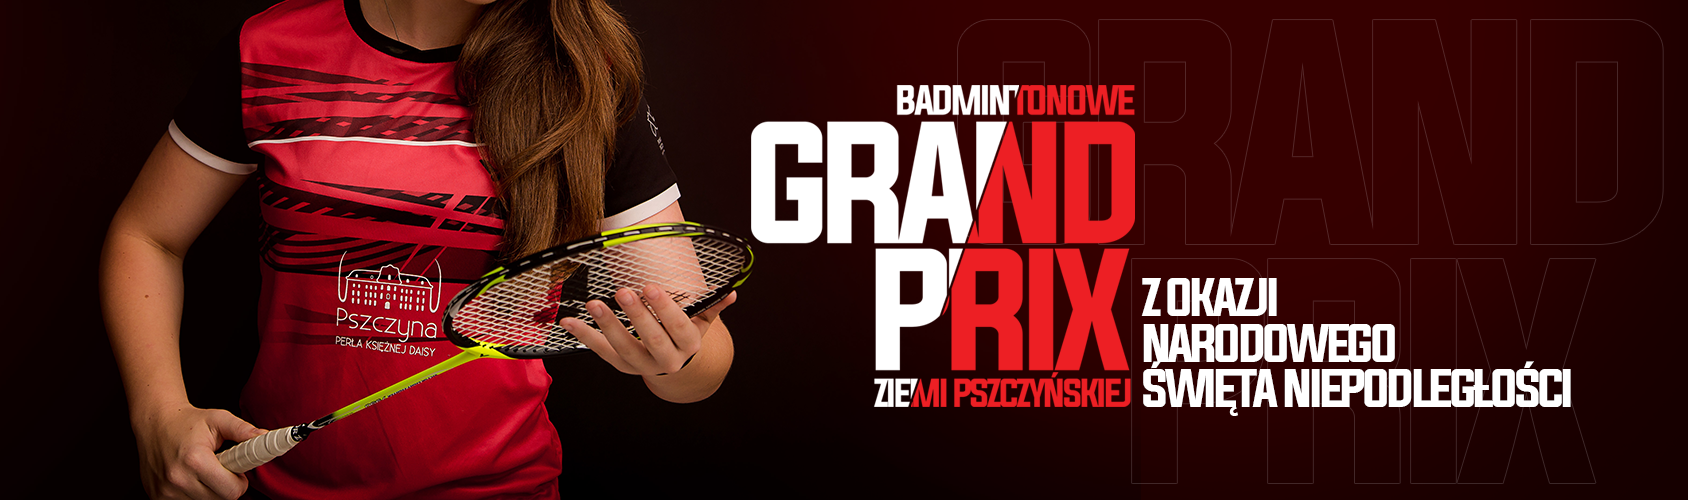 Baner informacyjny GP w Badmintonie